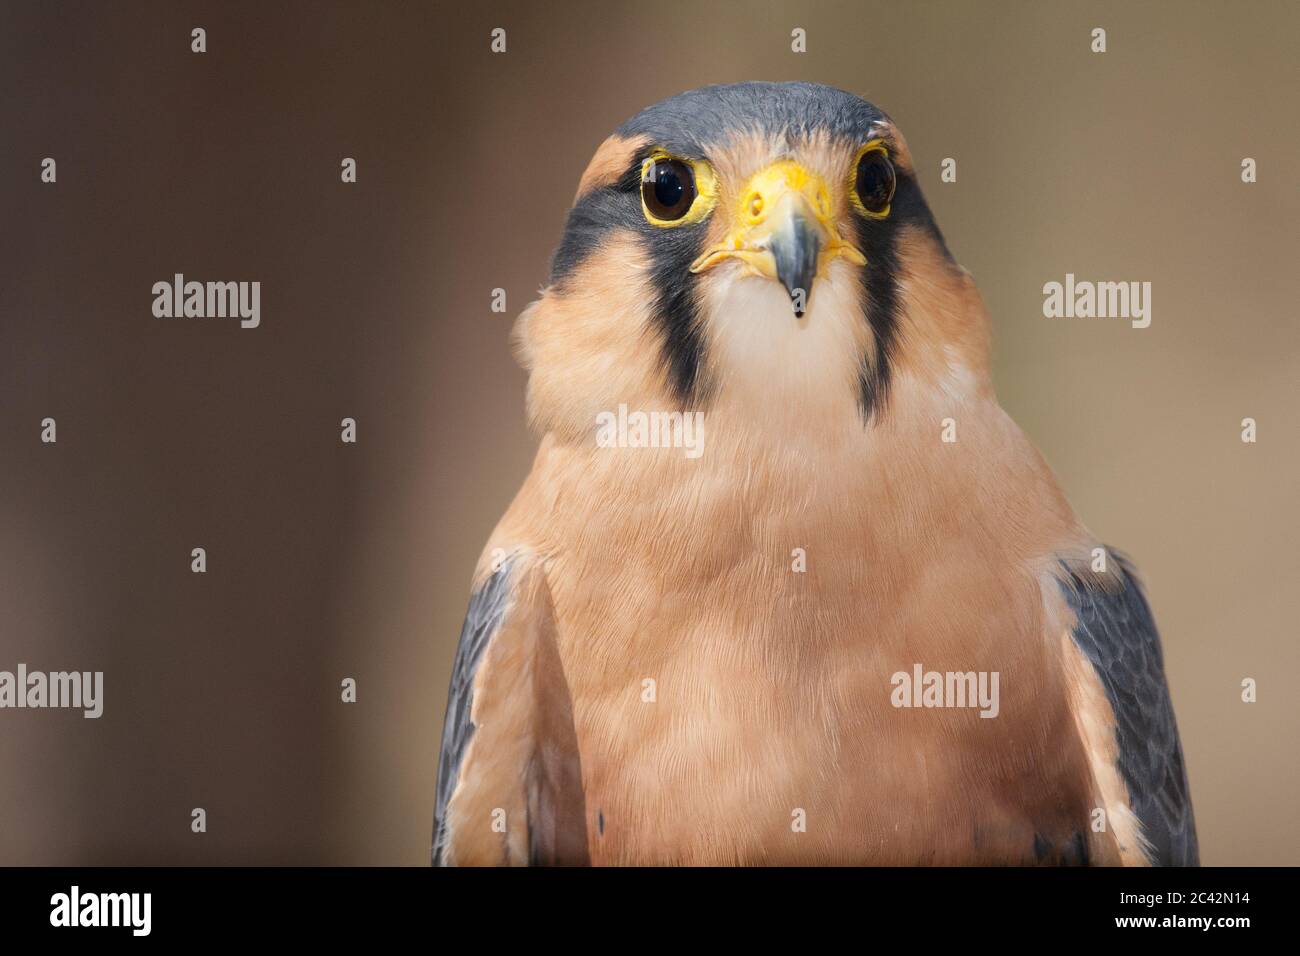 A portrait of an Aplomado falcon Stock Photo